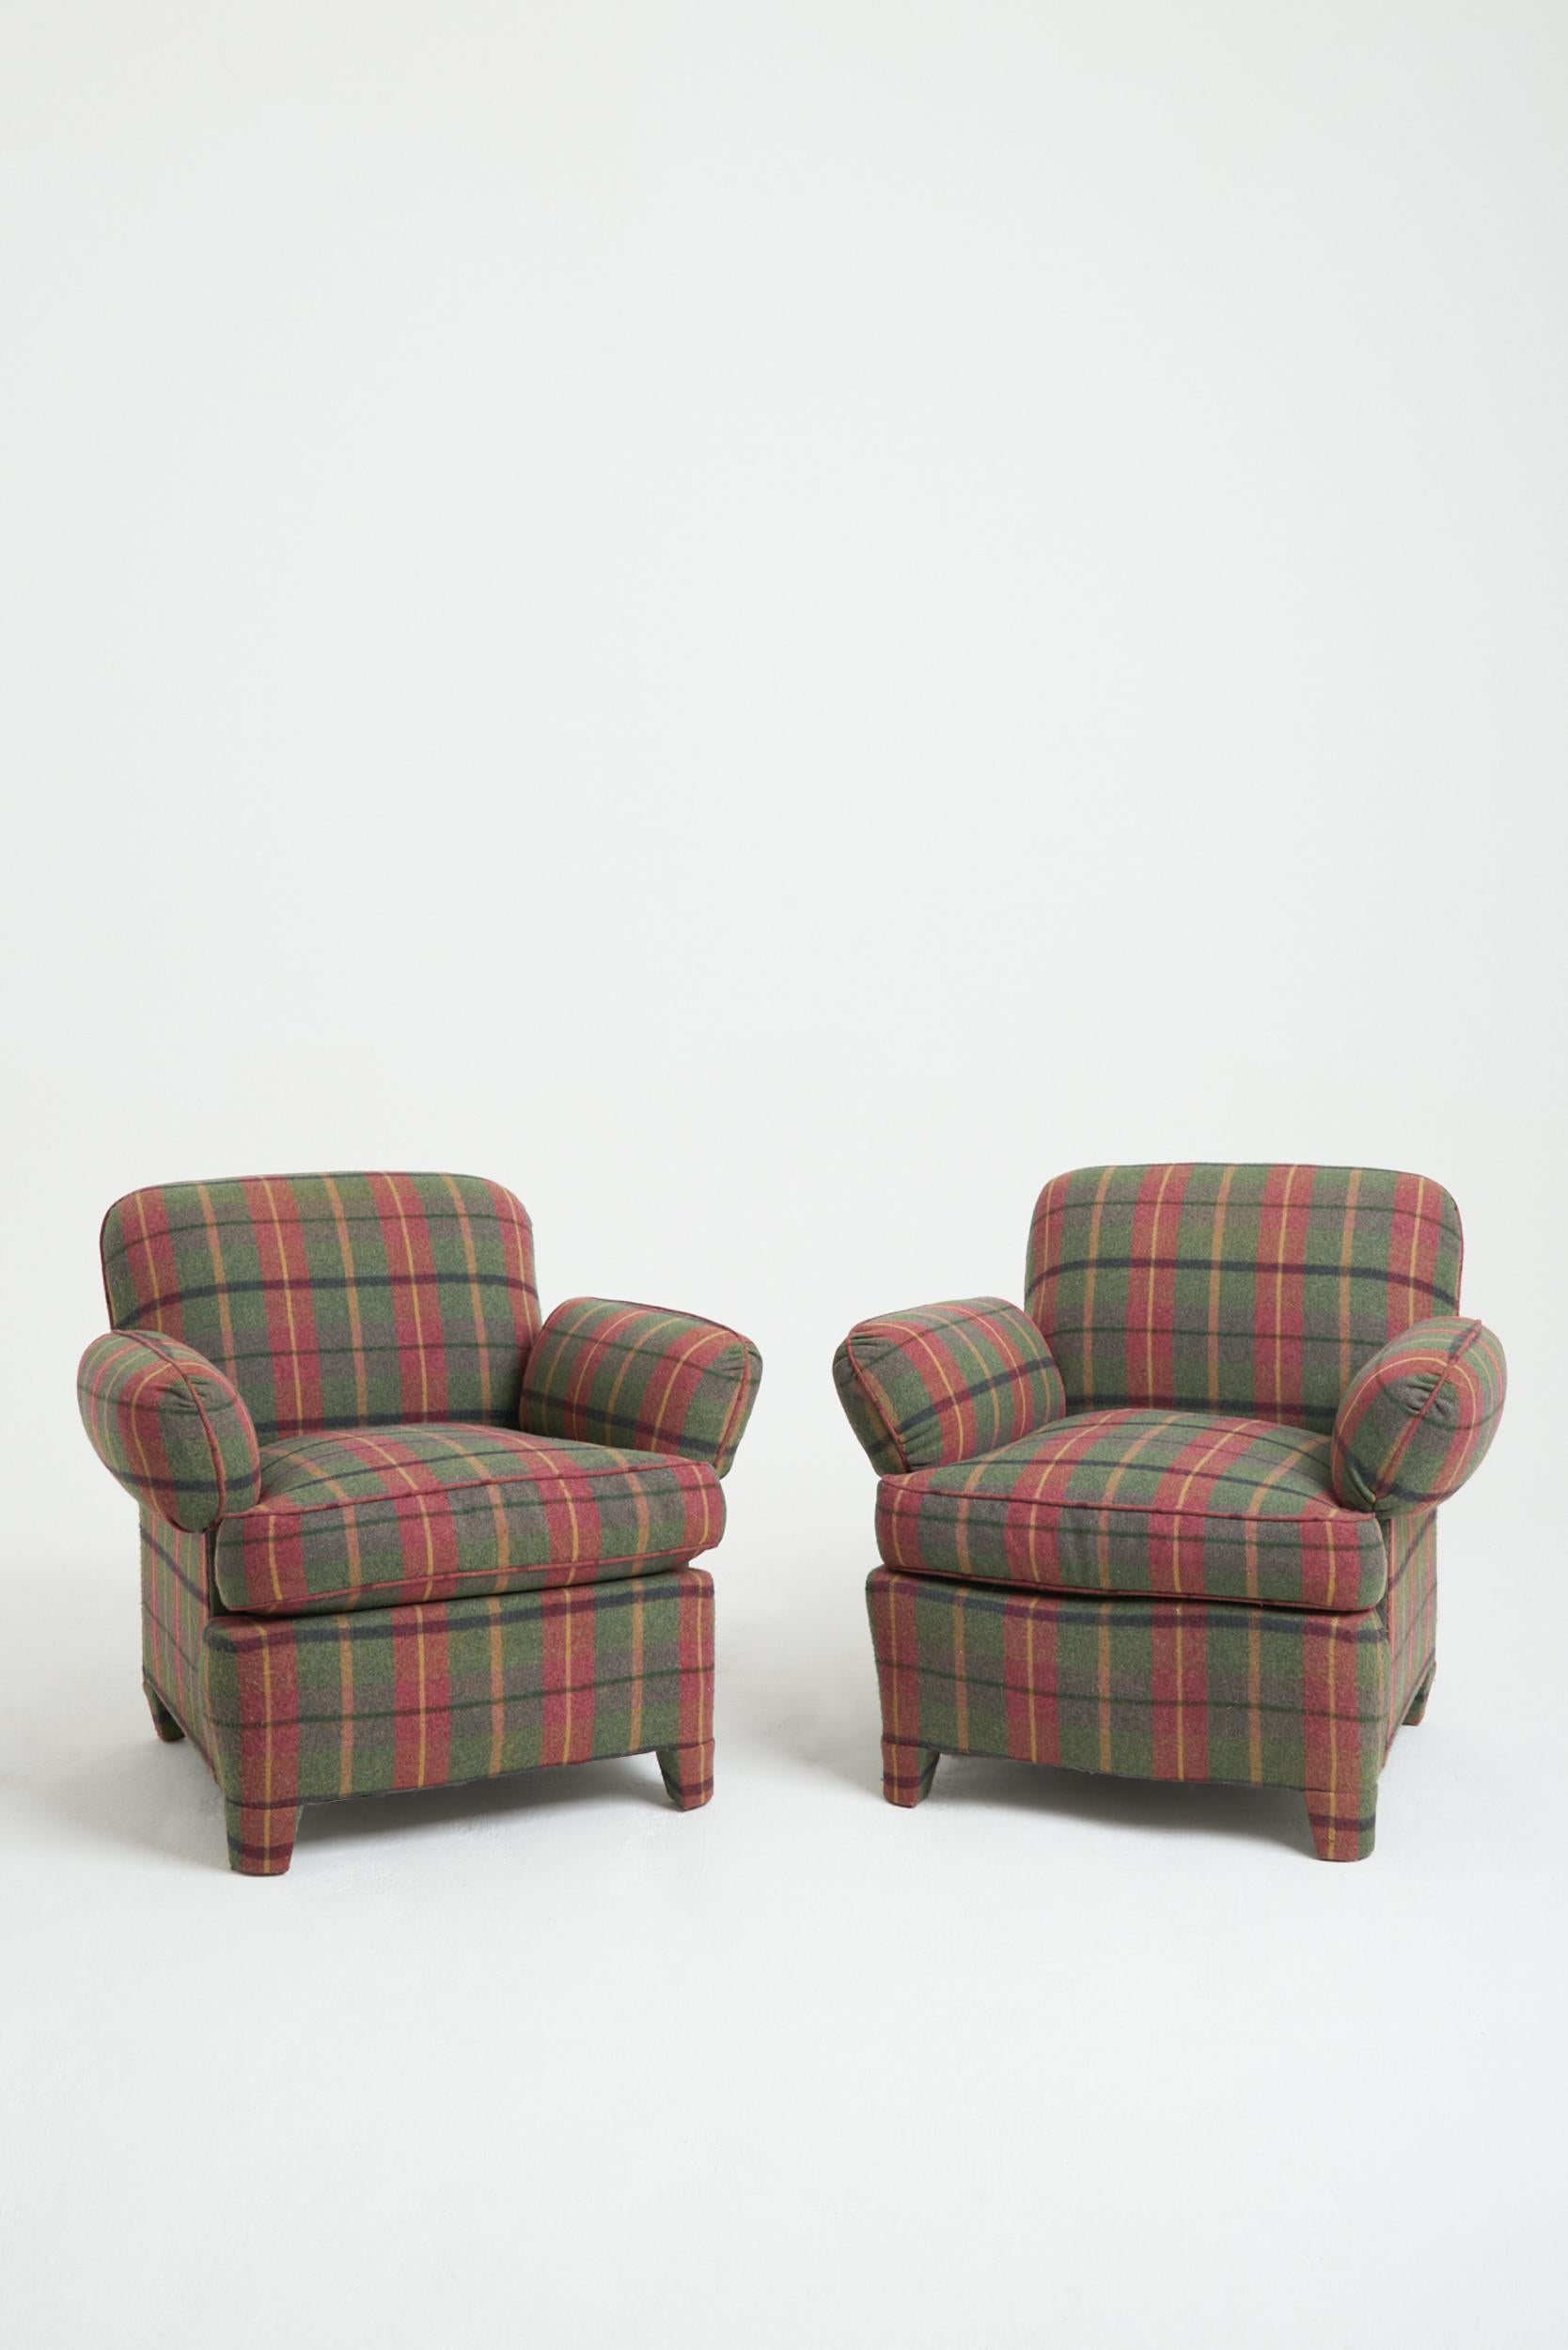 Ein Paar Sessel, vollständig mit Schottenkaro aus Wolle gepolstert, einschließlich der vier Füße.
Frankreich, drittes Quartal des 20. Jahrhunderts
80 cm hoch x 90 cm breit x 90 cm tief, Sitzhöhe 47 cm